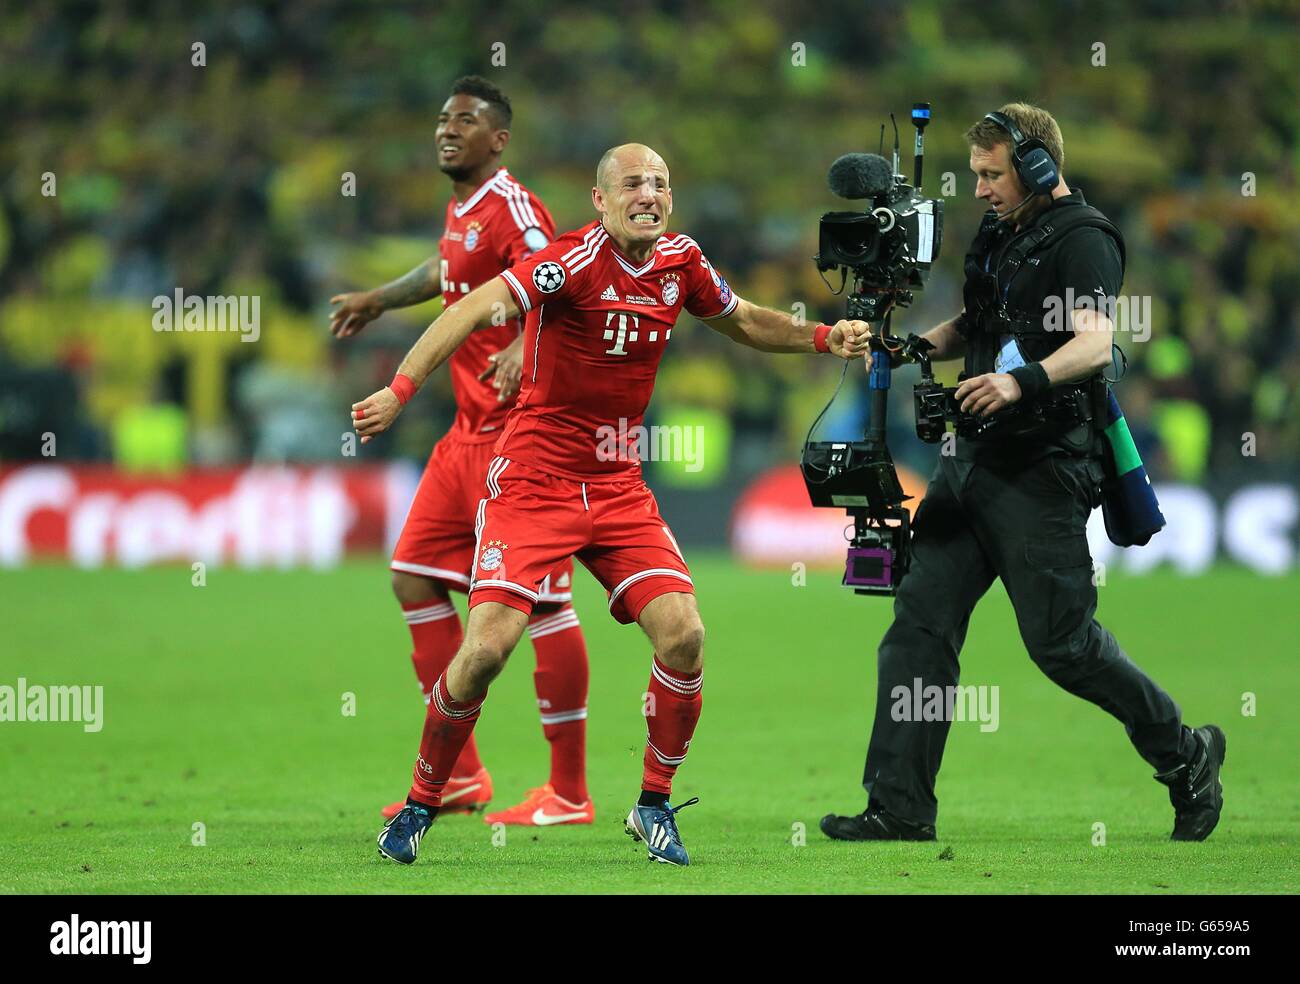 Calcio - UEFA Champions League - finale - Borussia Dortmund / Bayern Monaco di Baviera - Stadio di Wembley. Il Bayern Munich Arjen Robben celebra la vittoria della Champions League come fischio finale Foto Stock